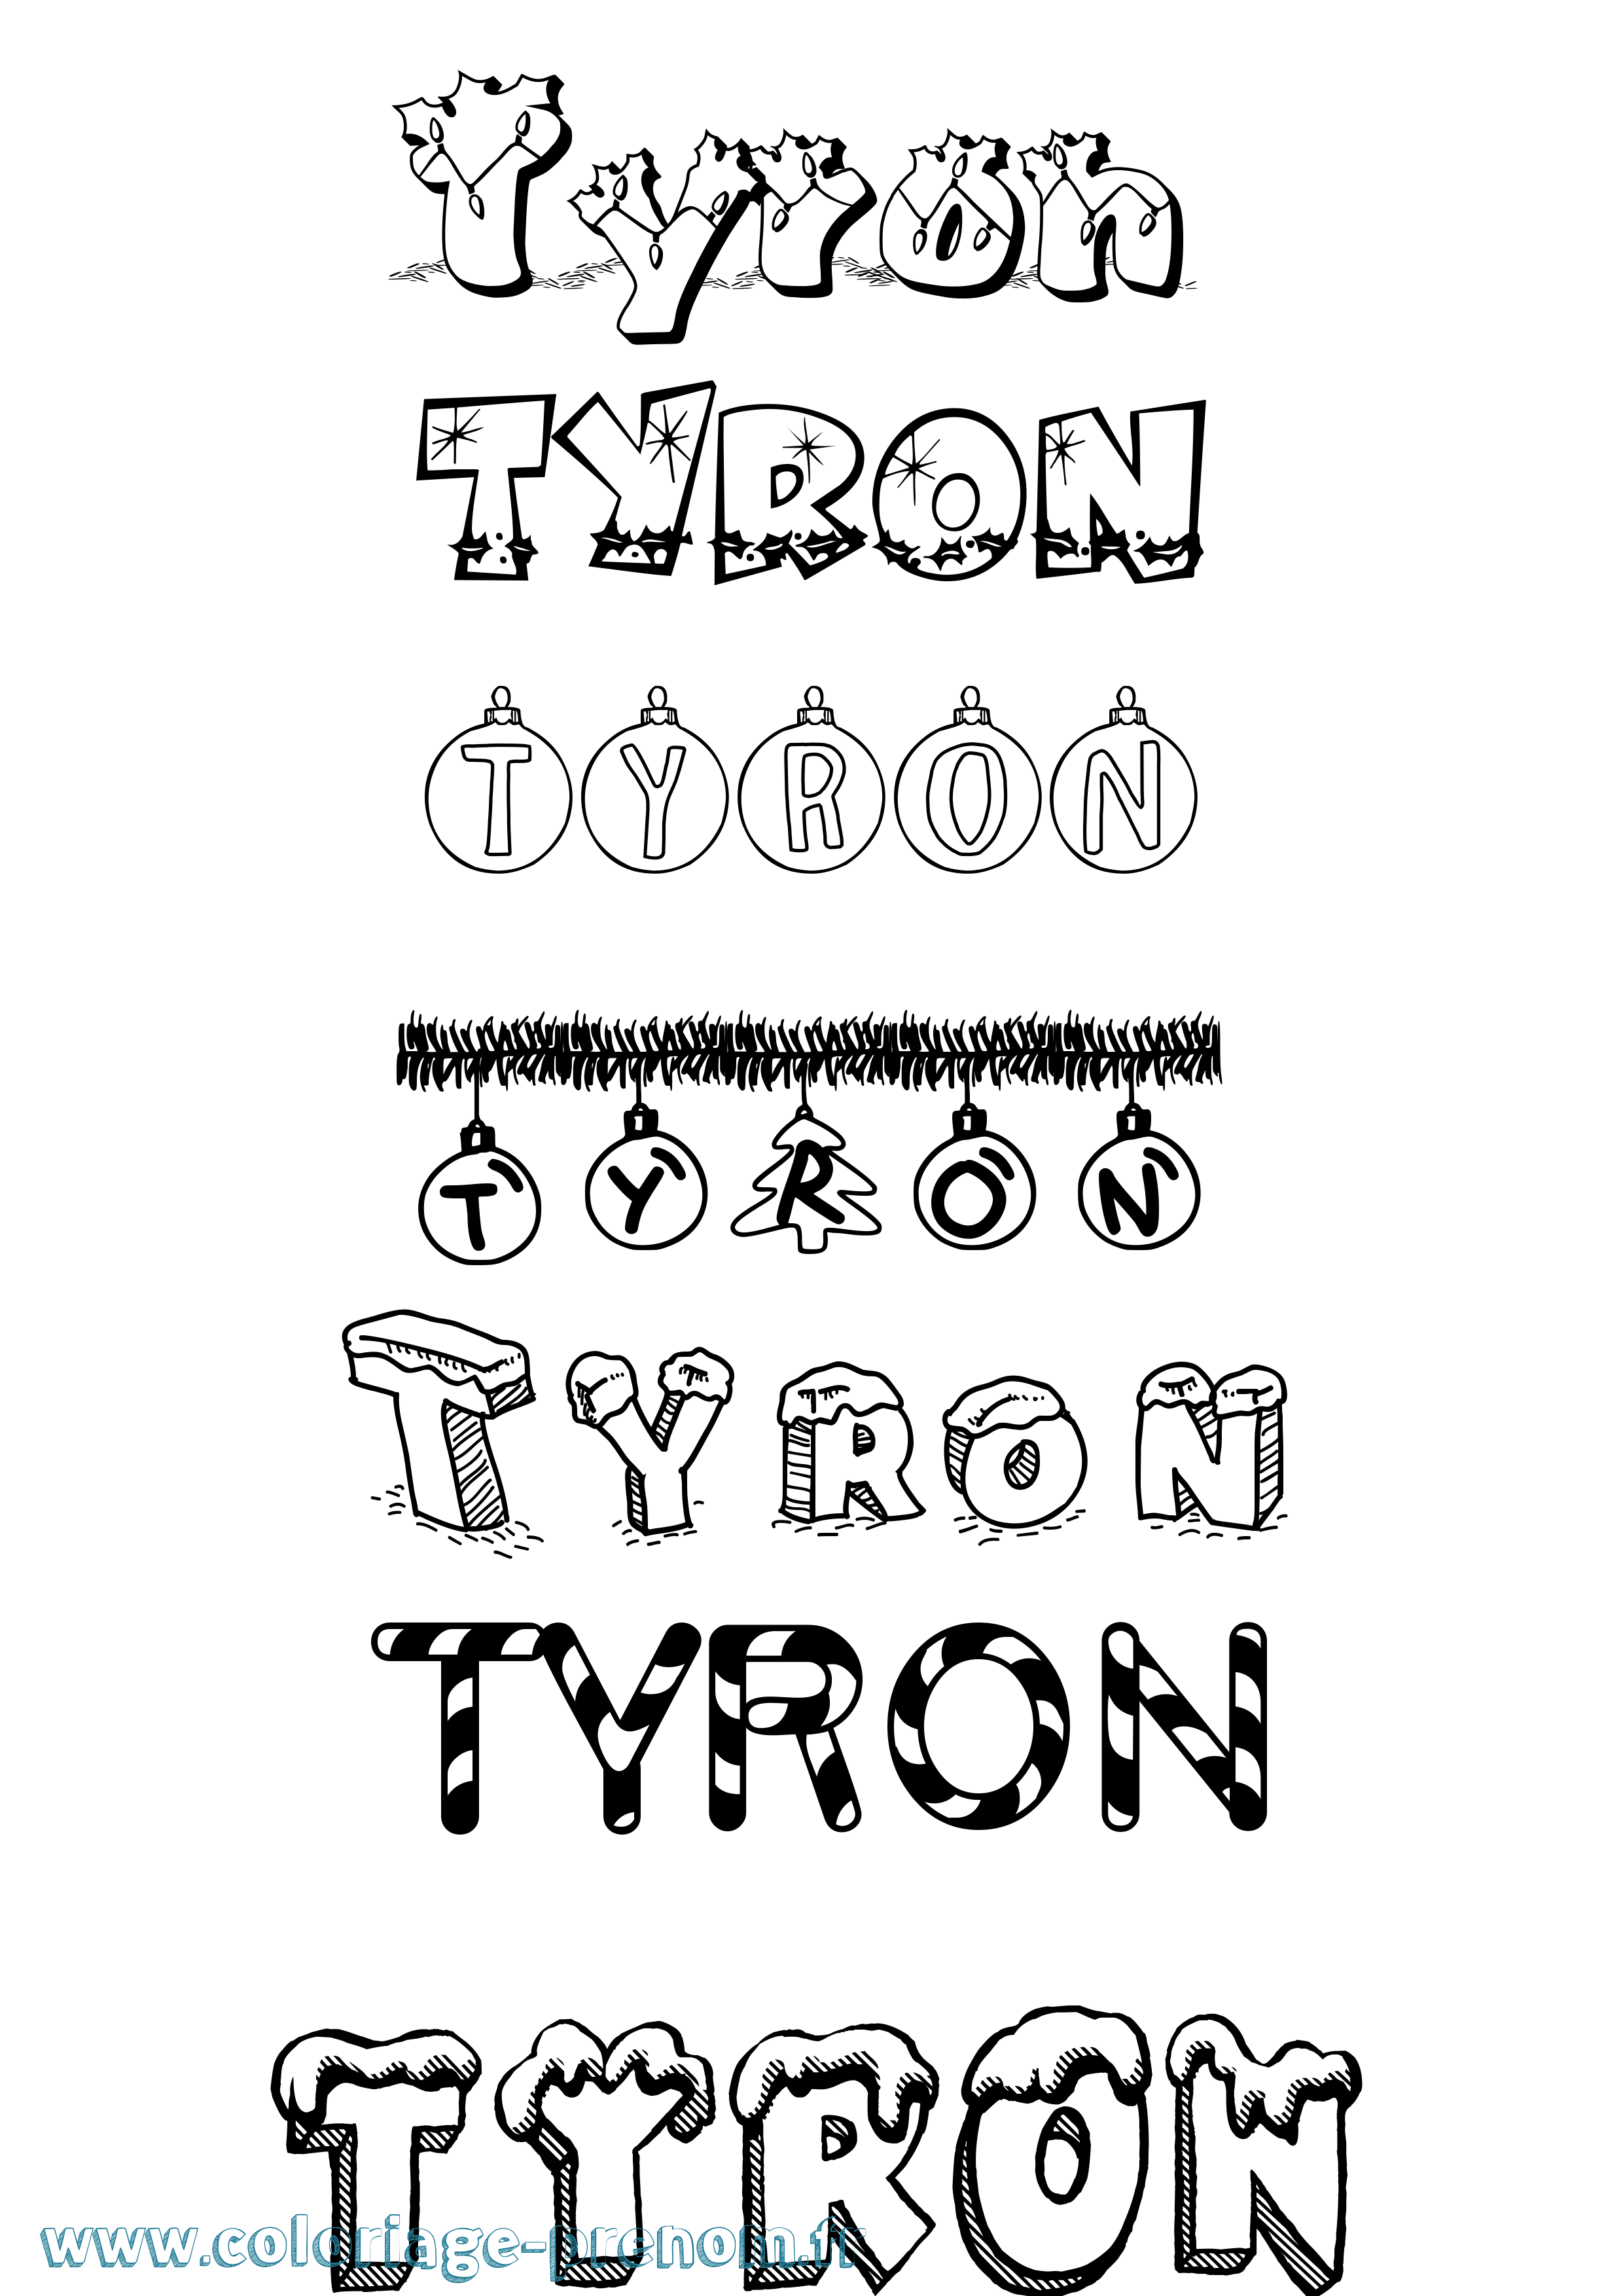 Coloriage prénom Tyron